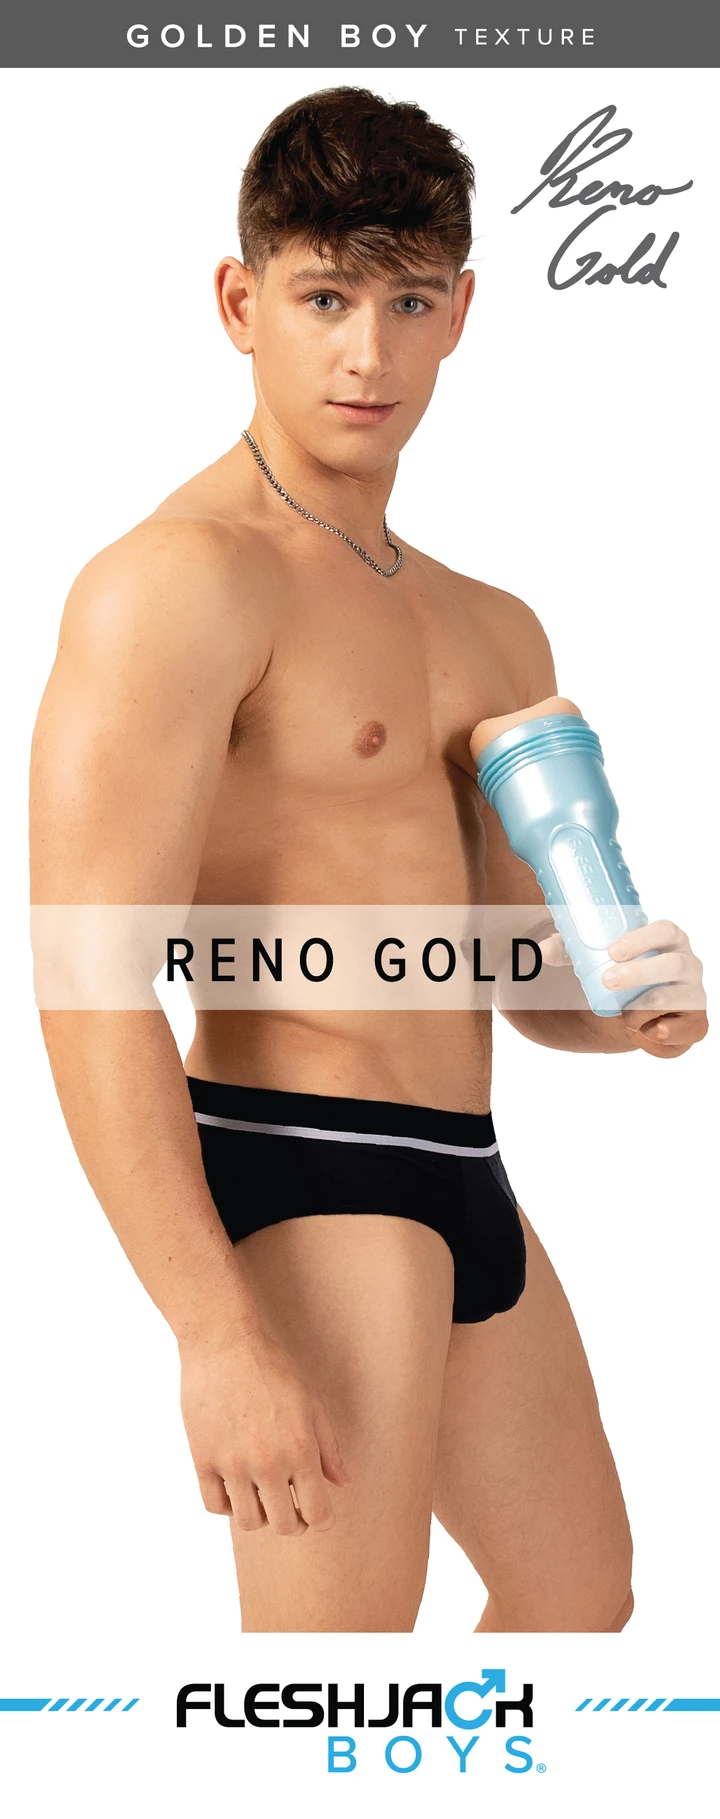 Fleshjack Boys Reno Gold Golden Boy